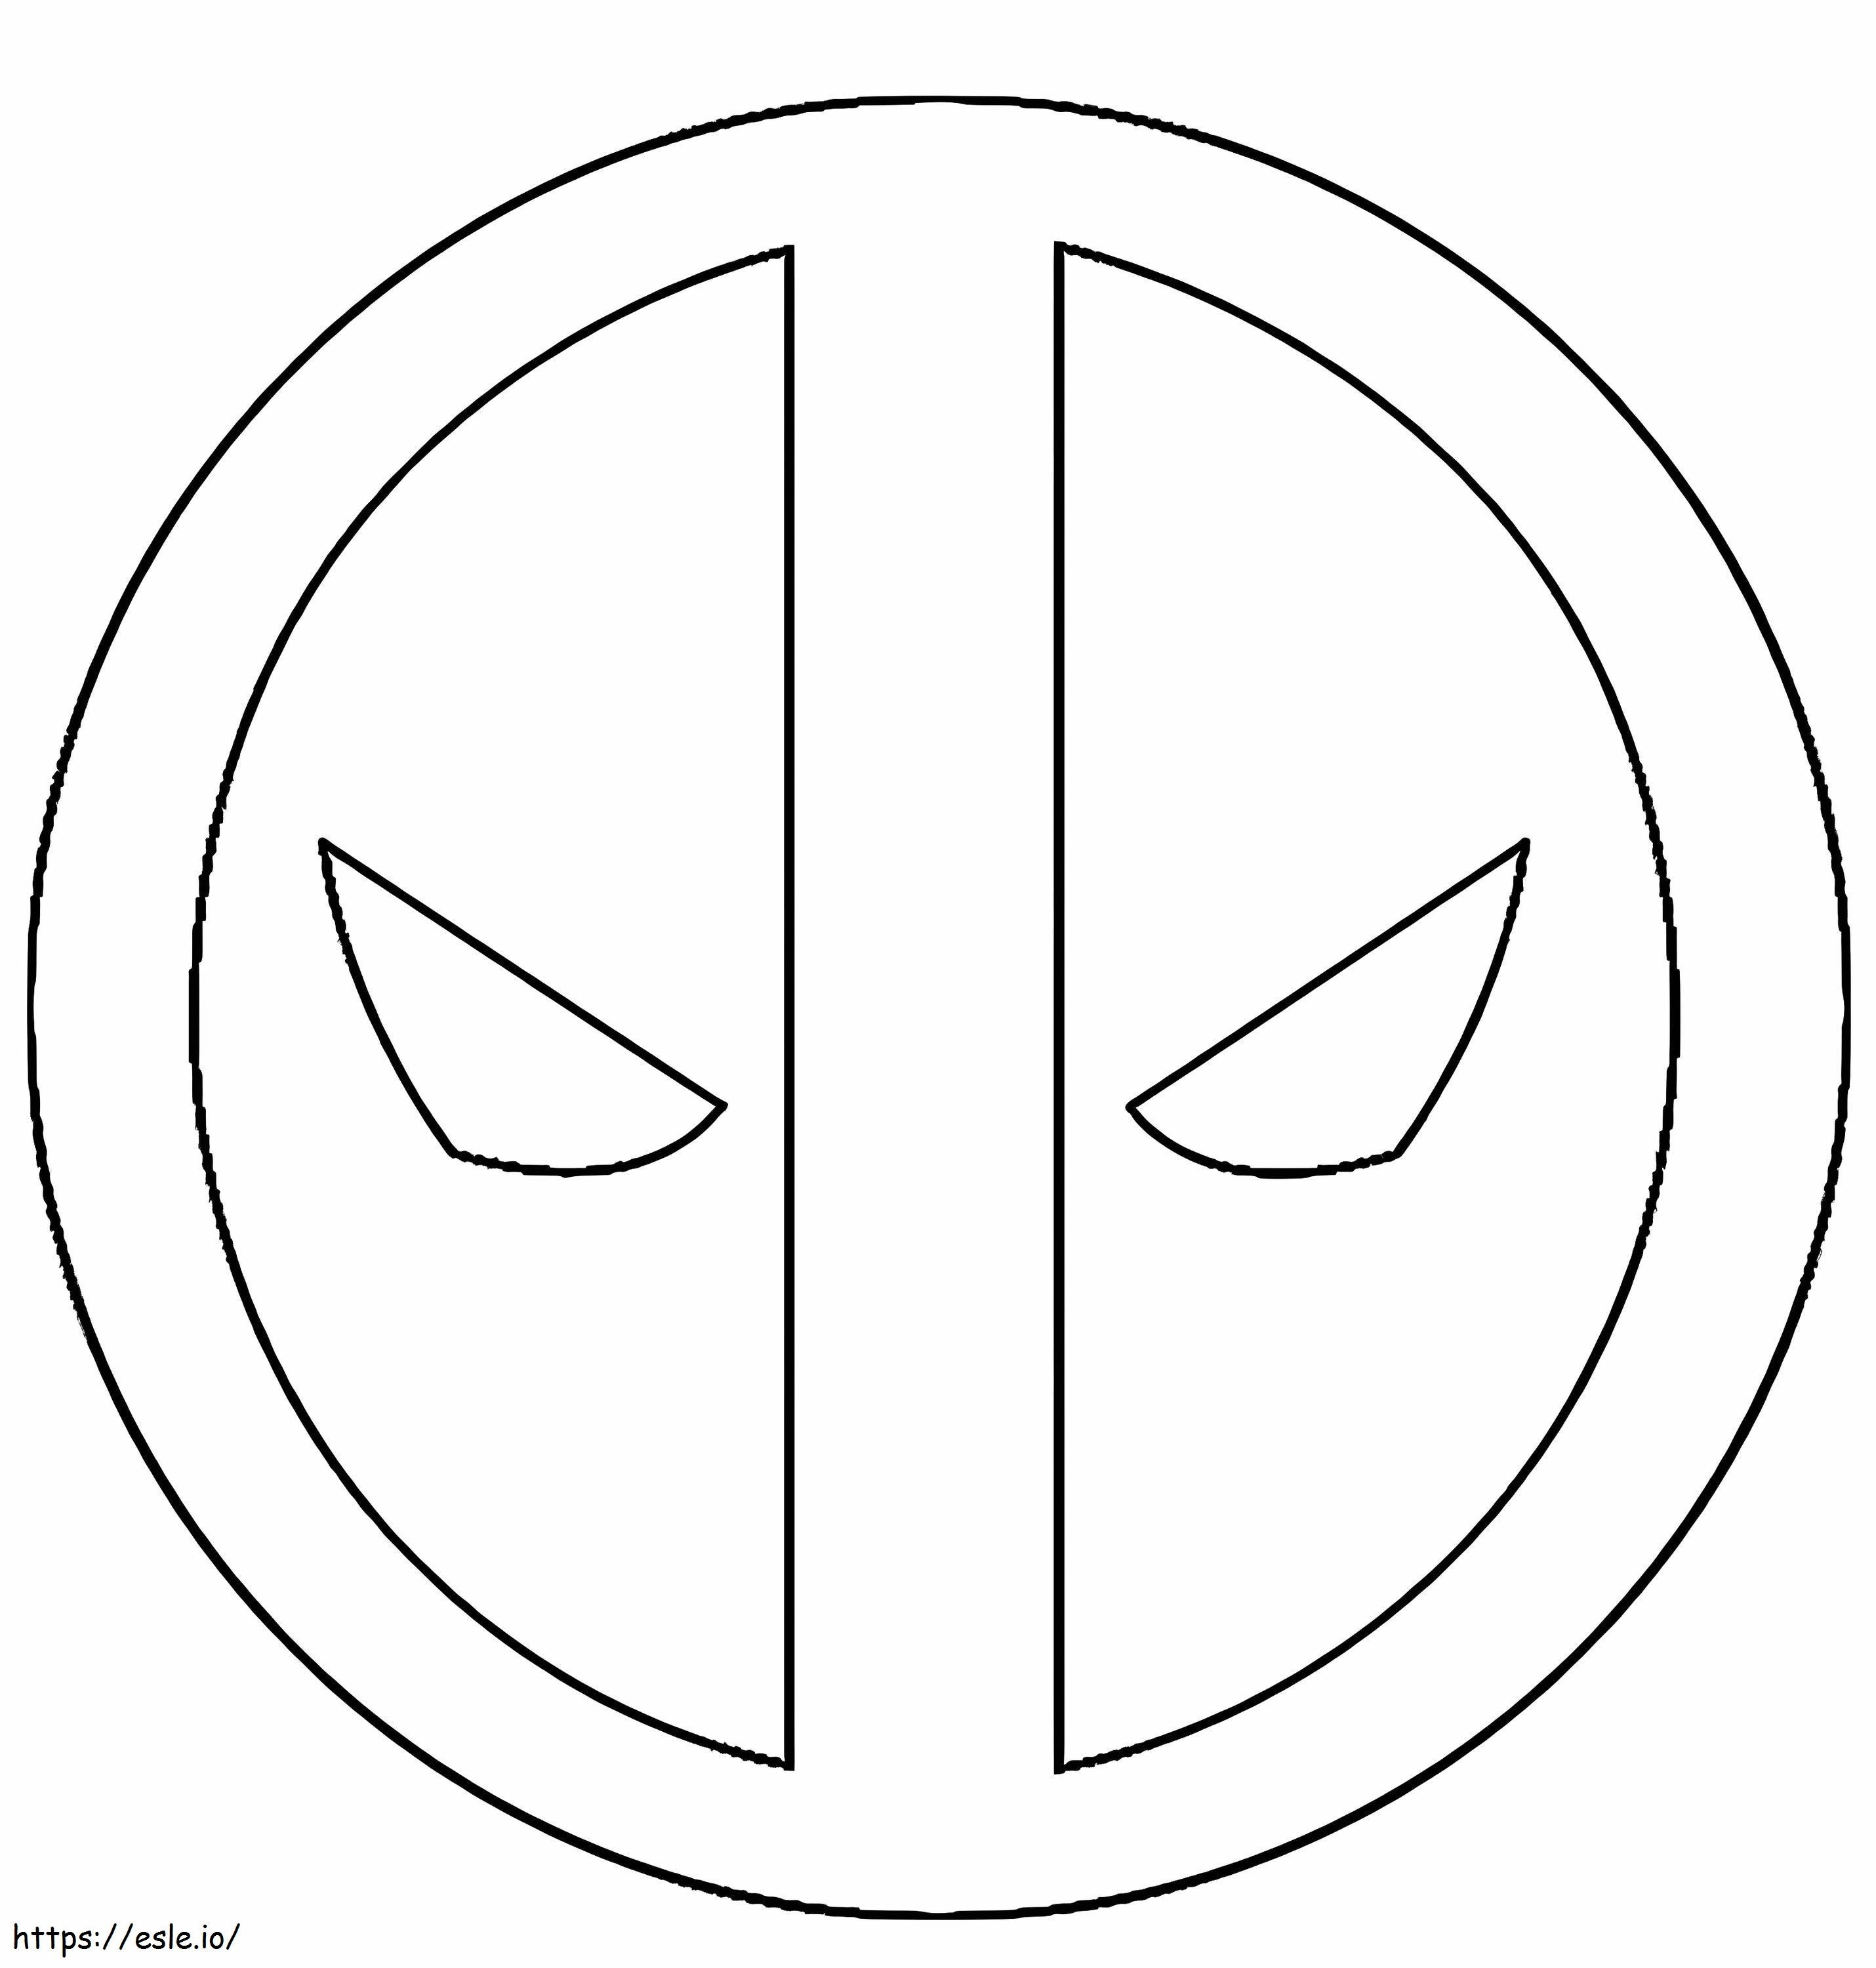 Simbolo The Deadpool de colorat